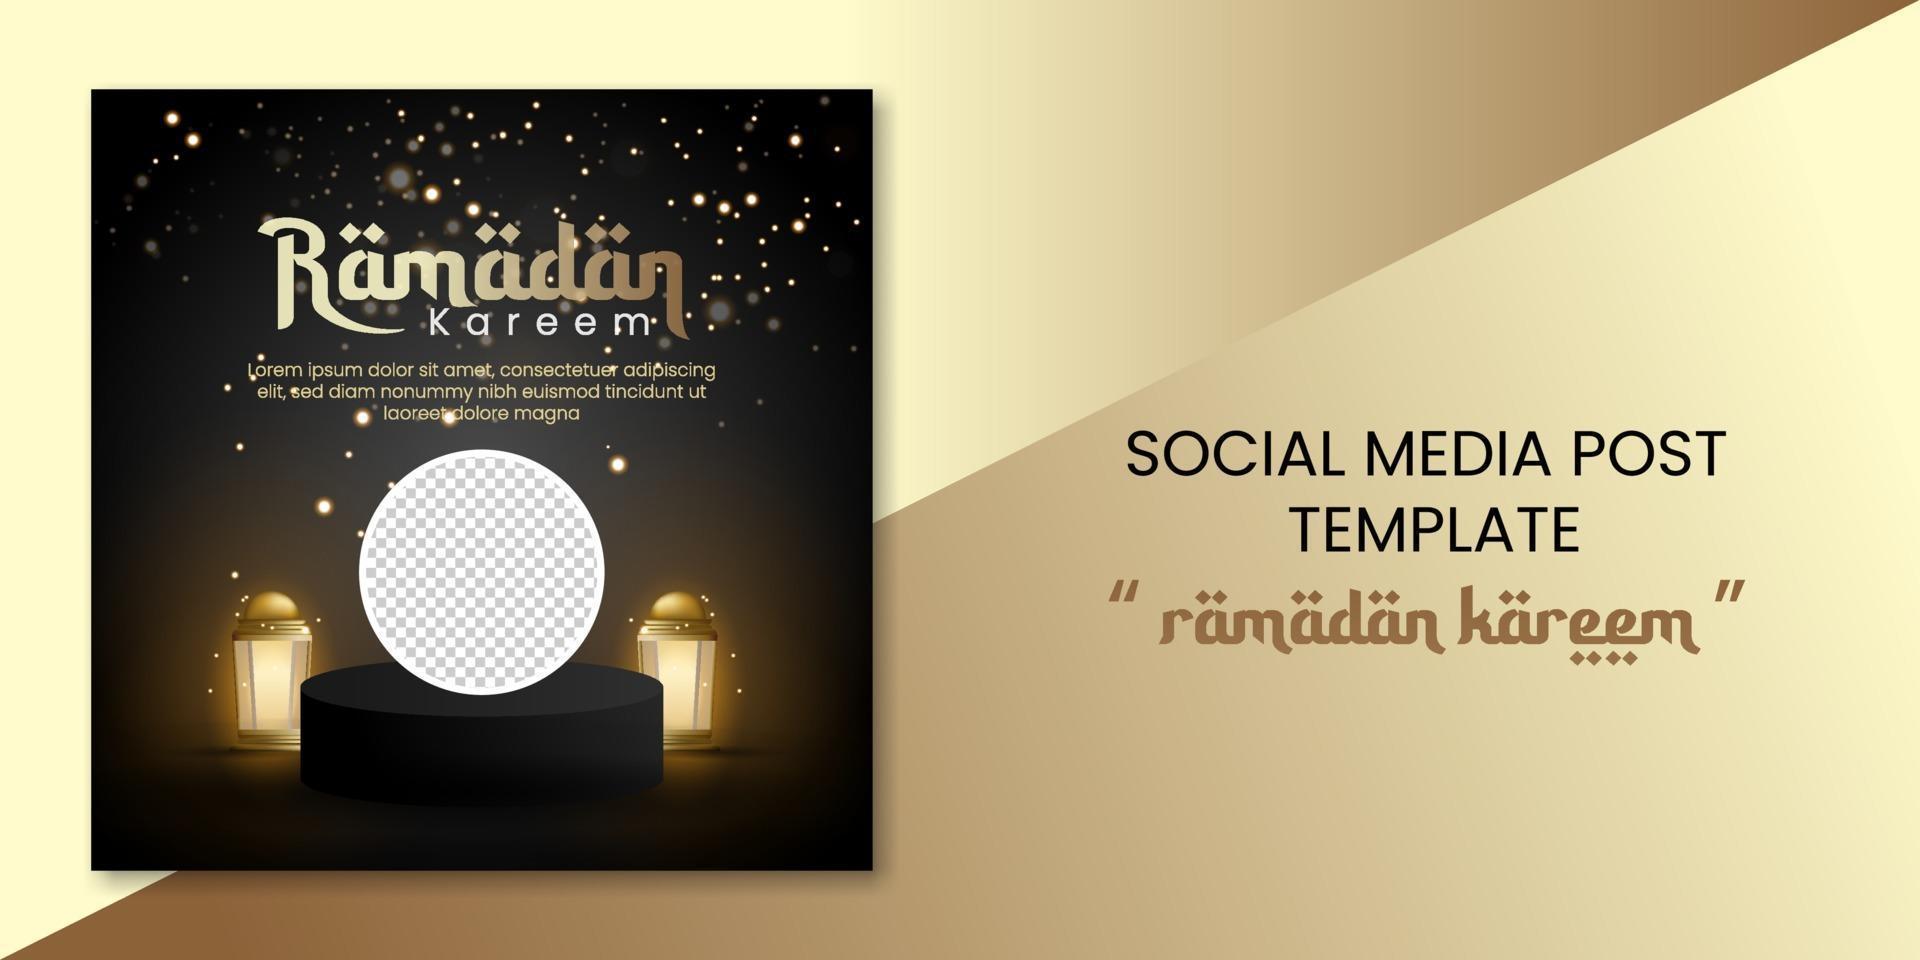 ramadan kareem sociale media banner met lantaarn en podium voor wenskaart, voucher, poster, sjabloon voor spandoek voor islamitische gebeurtenis vector